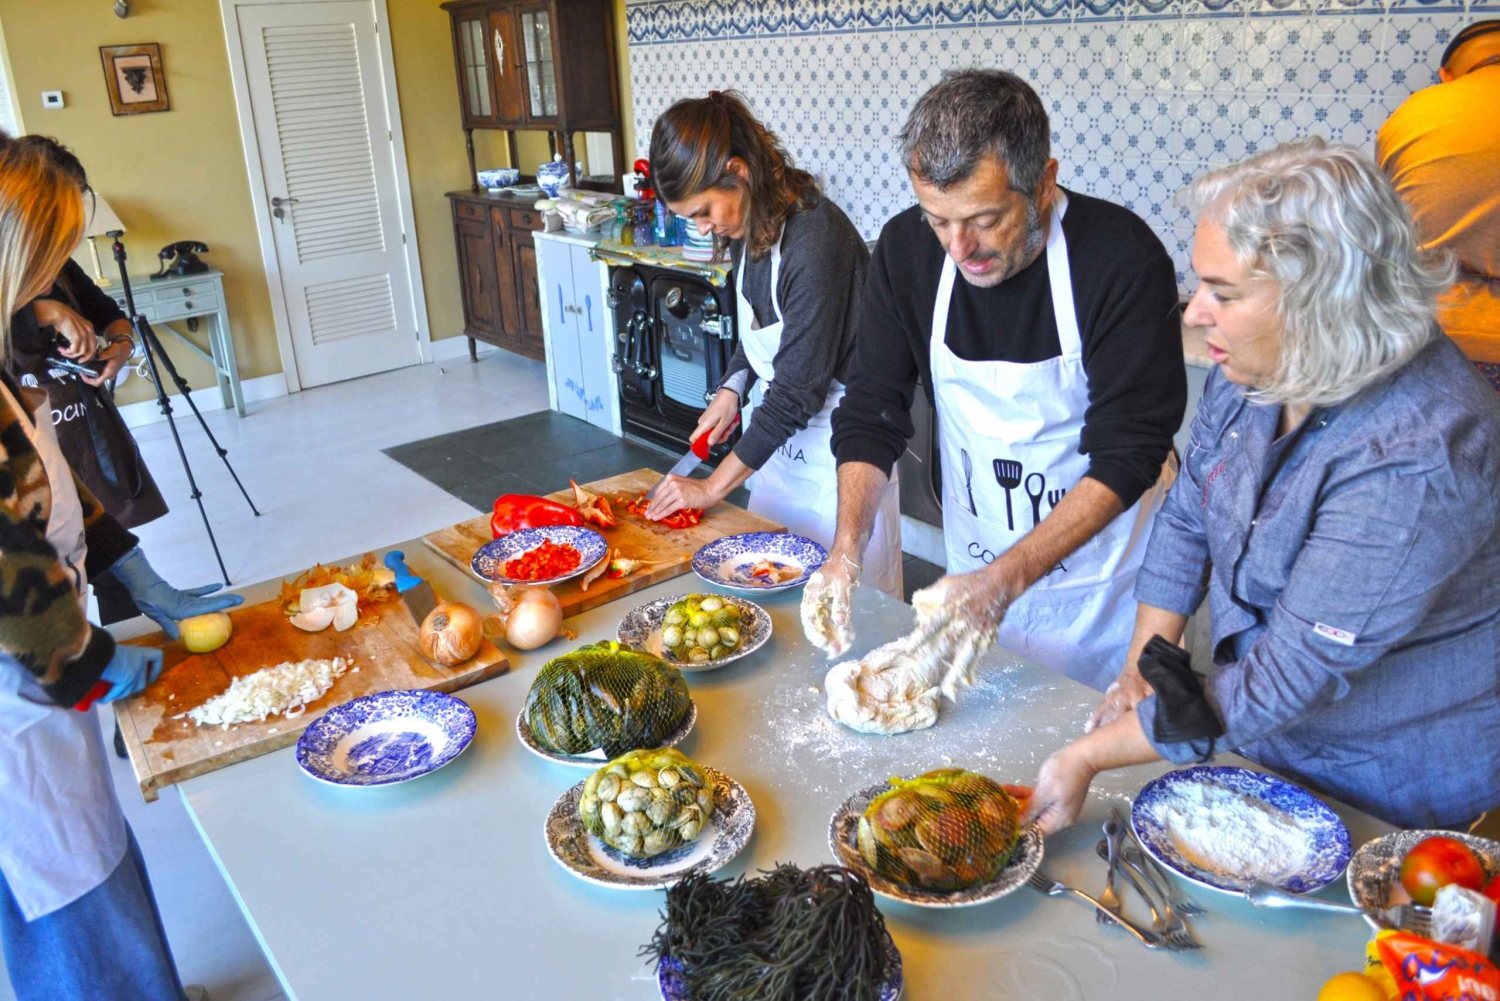 Pontevedra: galicyjska lekcja gotowania z instruktorem szefa kuchni